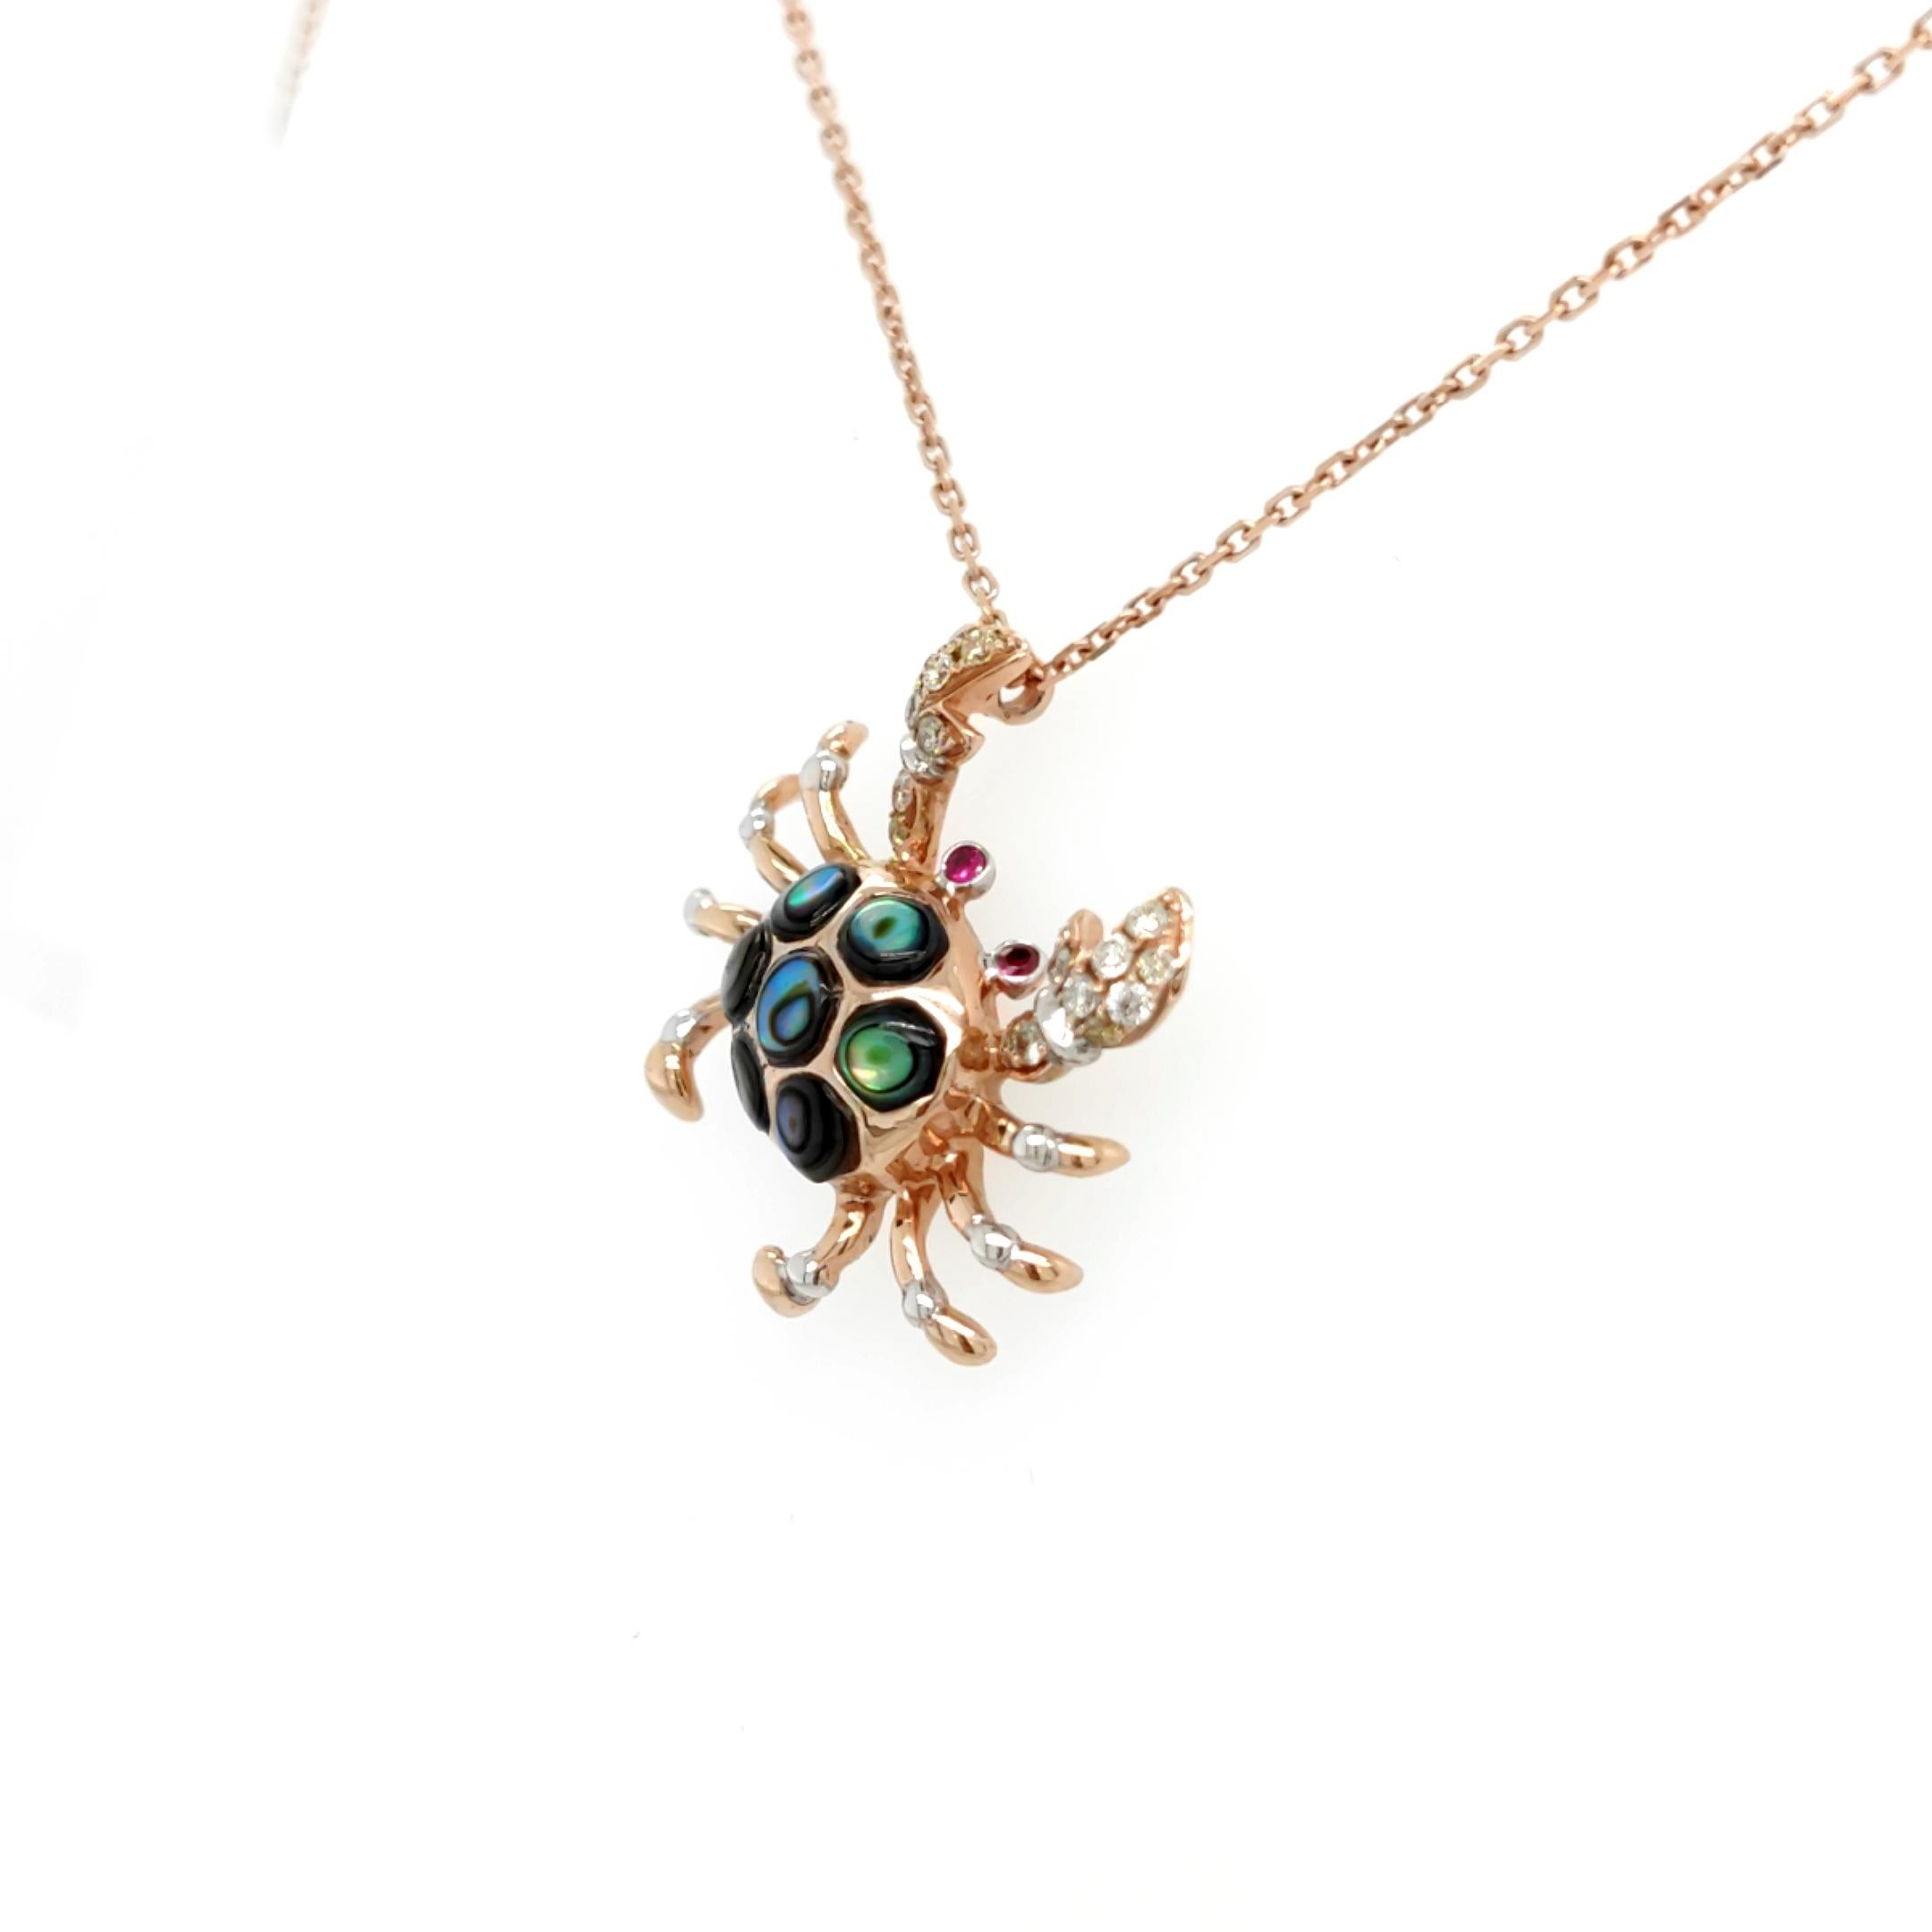 18K Rose Gold Crab Diamond Anhänger Halskette mit Rubinen
Länge: 16,5